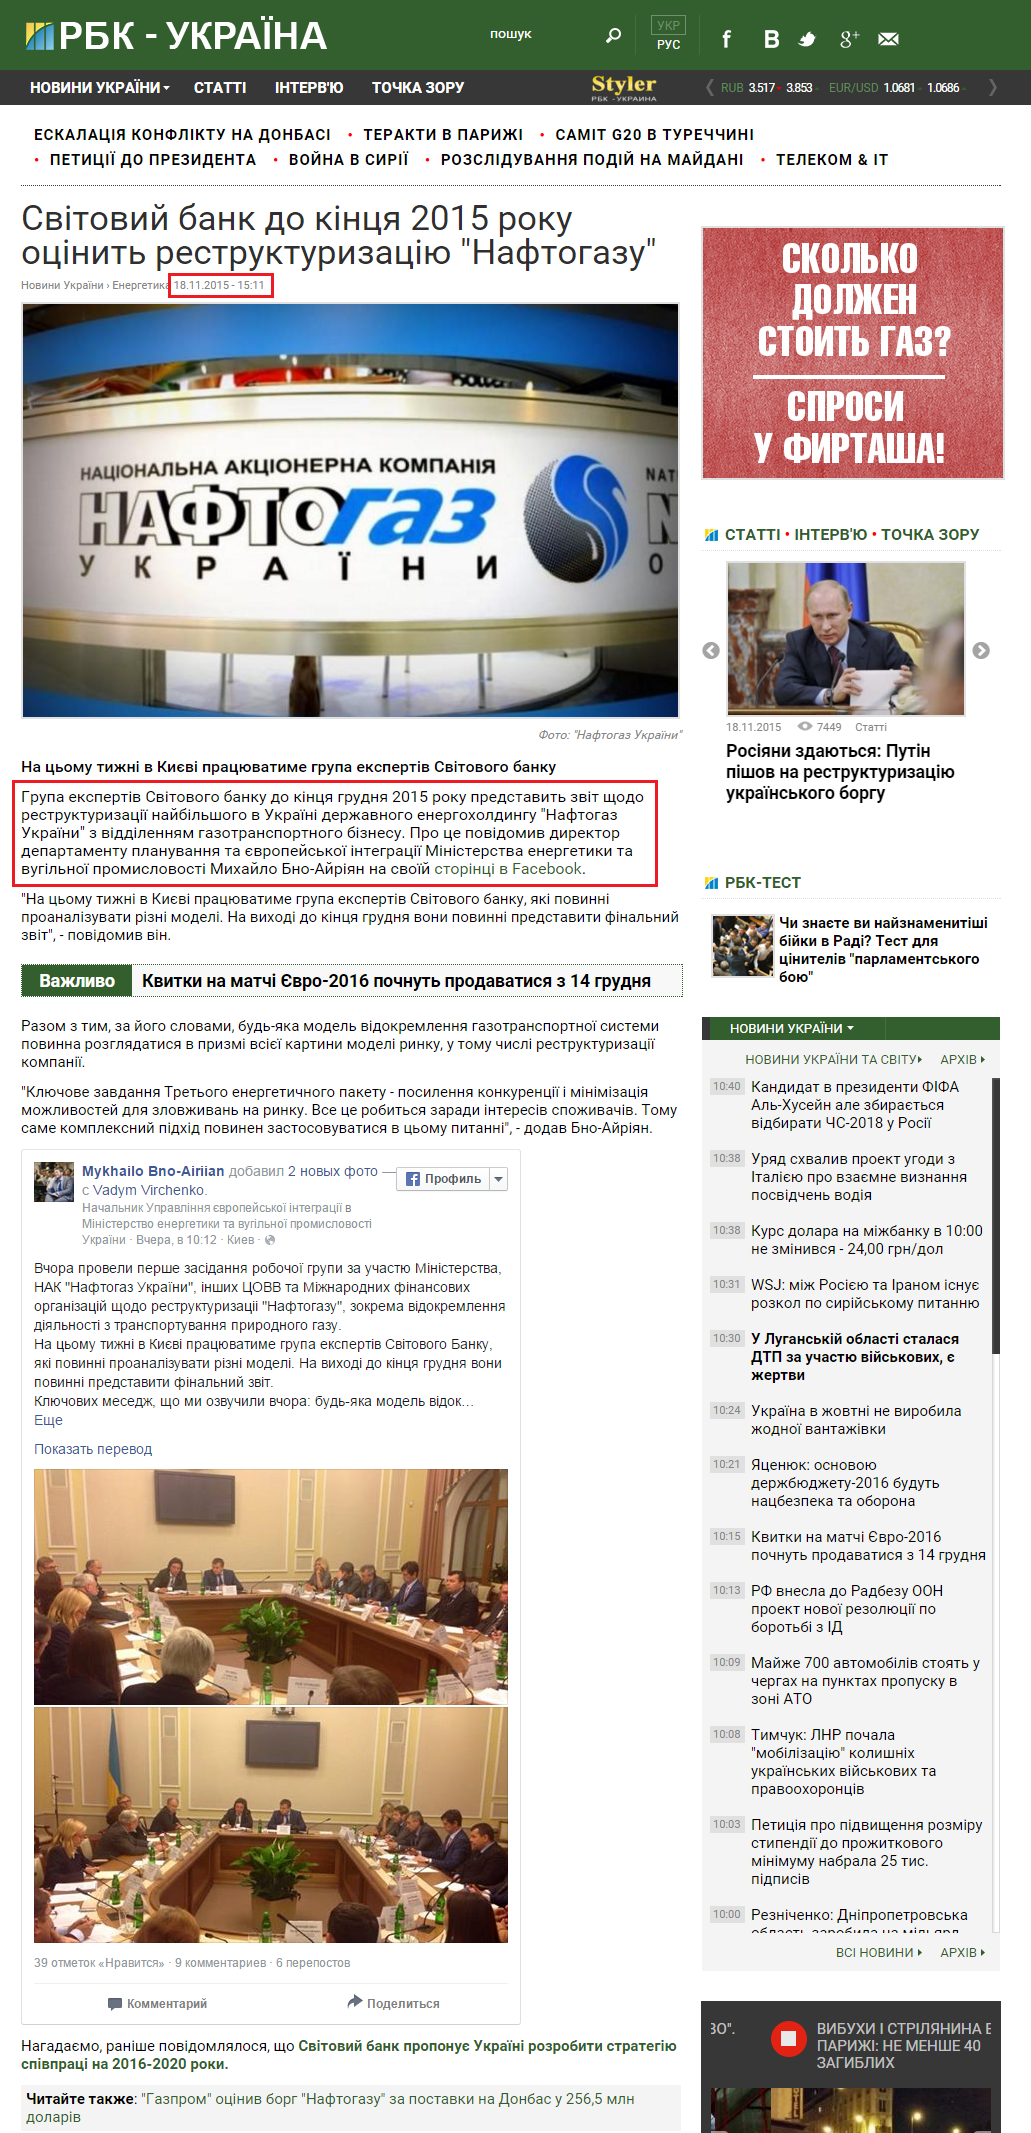 http://www.rbc.ua/ukr/news/vsemirnyy-bank-kontsa-2015-goda-otsenit-restrukturizatsiyu-1447851871.html